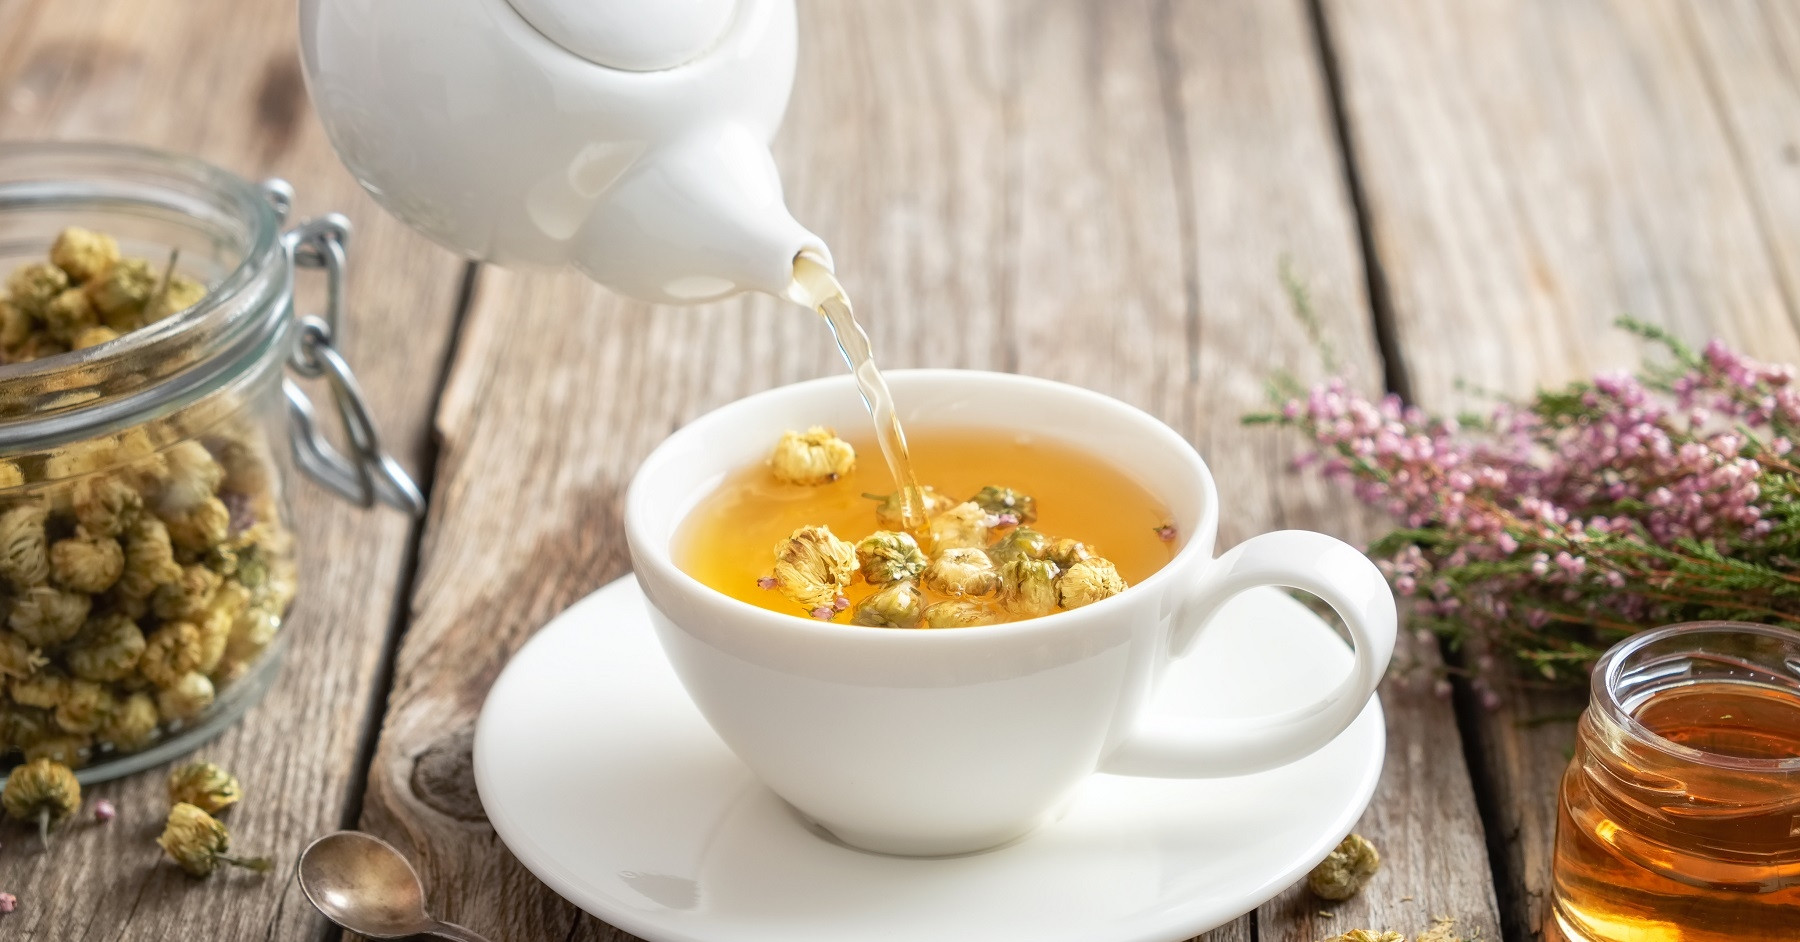 Cách uống trà hoa cúc để tận dụng tối đa tác dụng cho sức khỏe?
